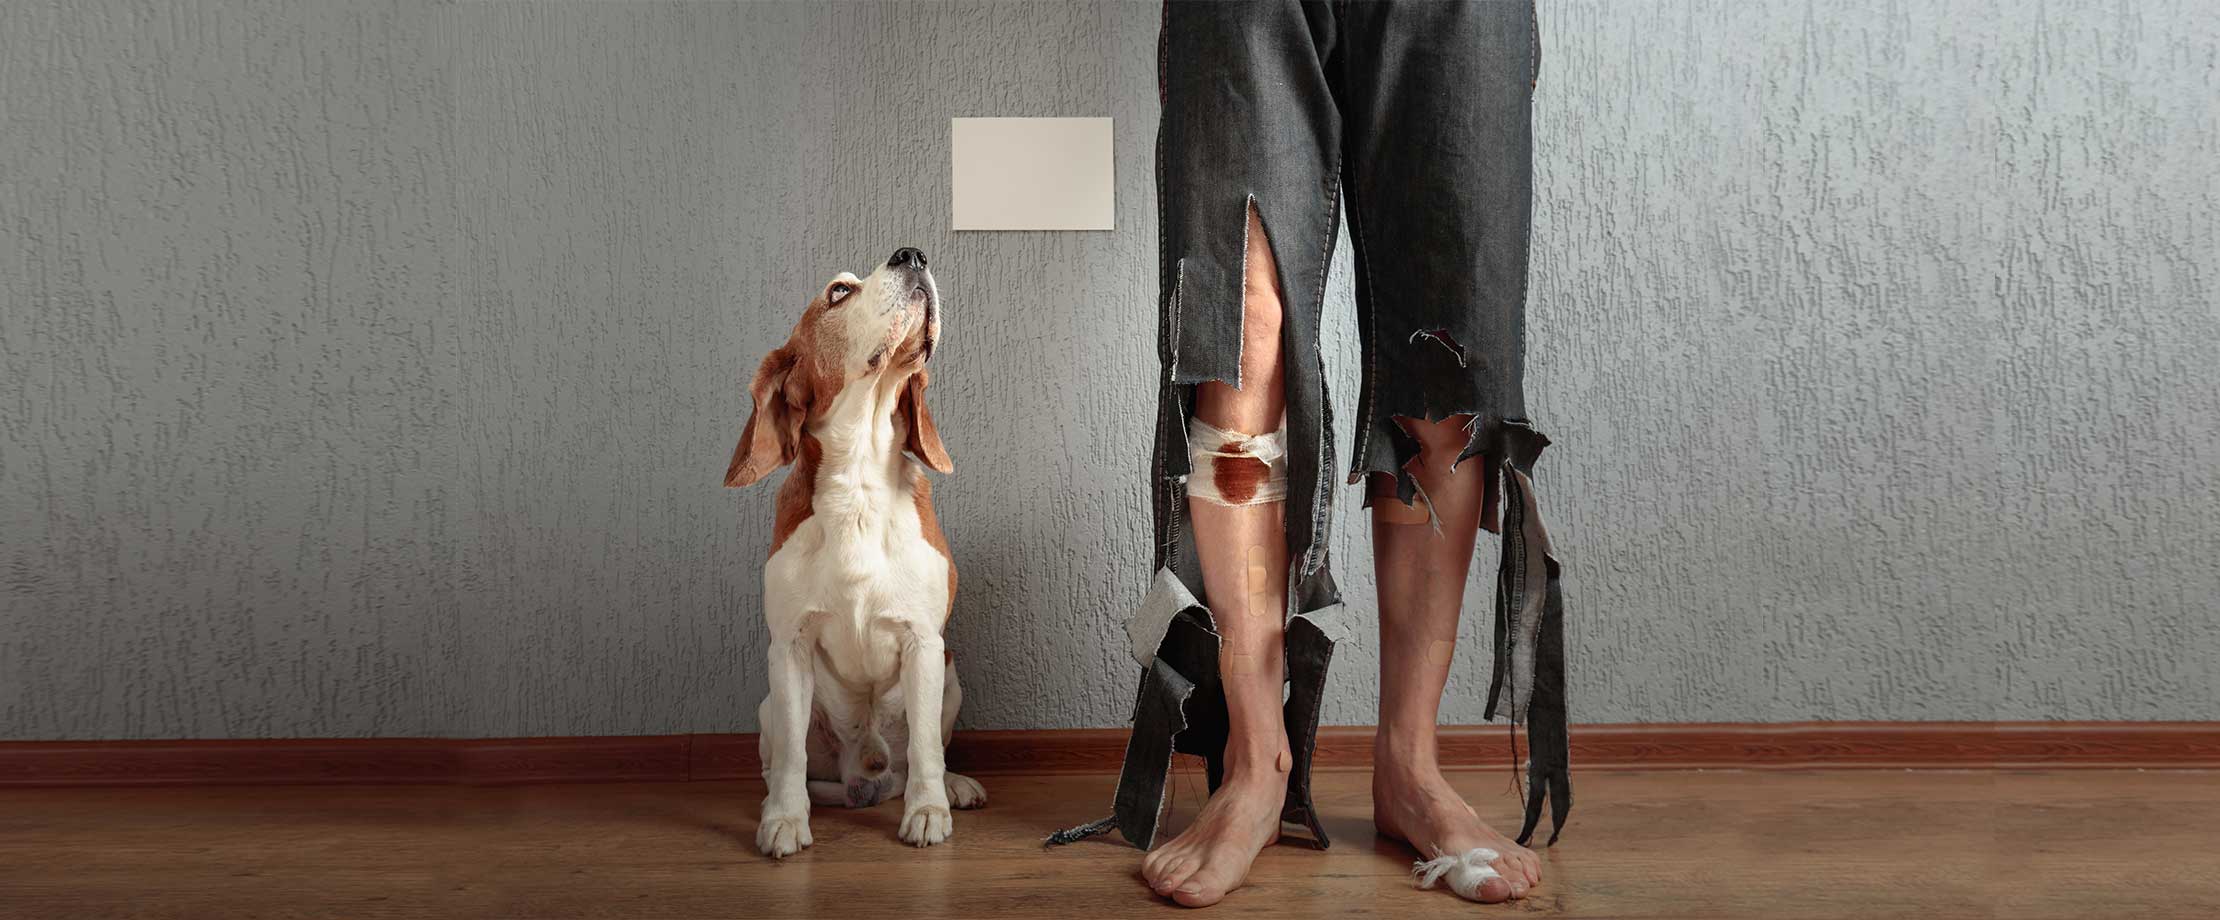 Ein Hund sitzt in einer Wohnung und schaut schuldbewusst noch oben. Neben ihm steht ein Mann, dessen Hose an den Beinen total zerfetzt ist.